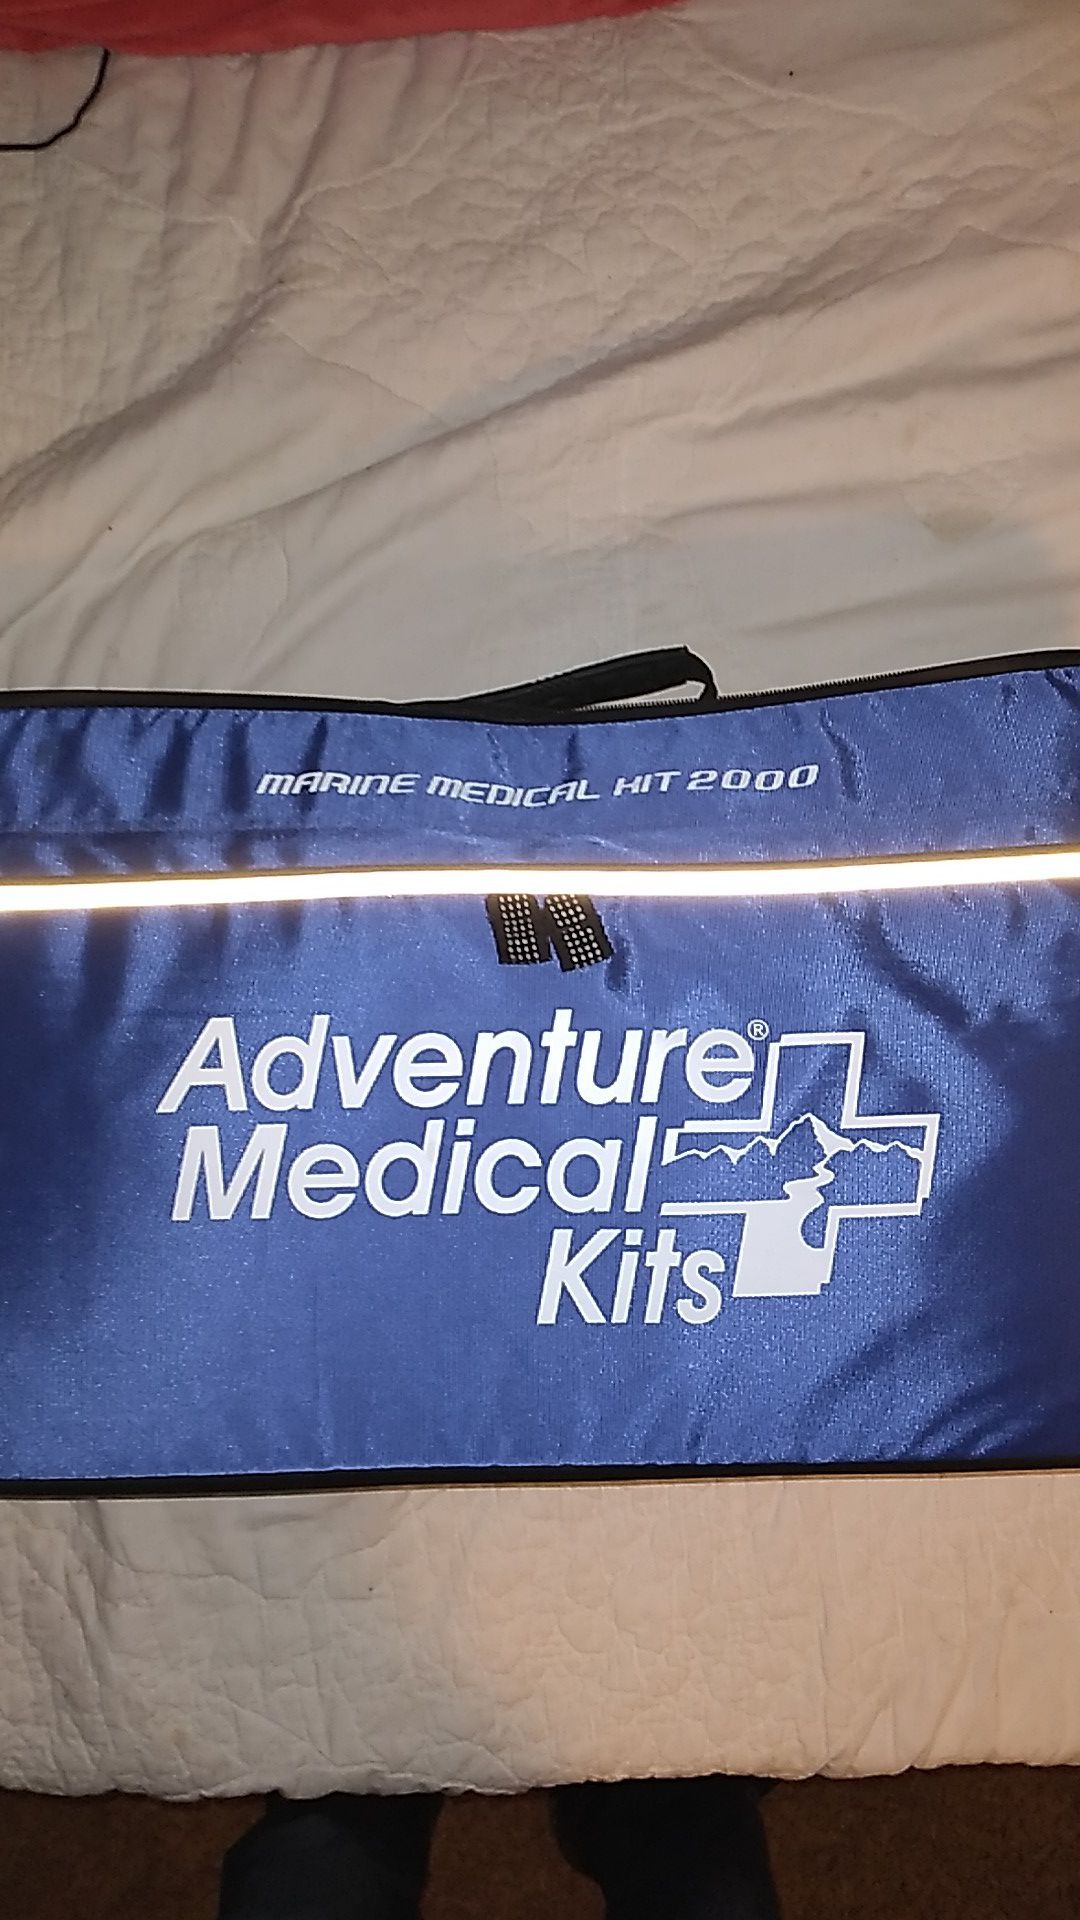 Adventure Marine Medical Kit 2000